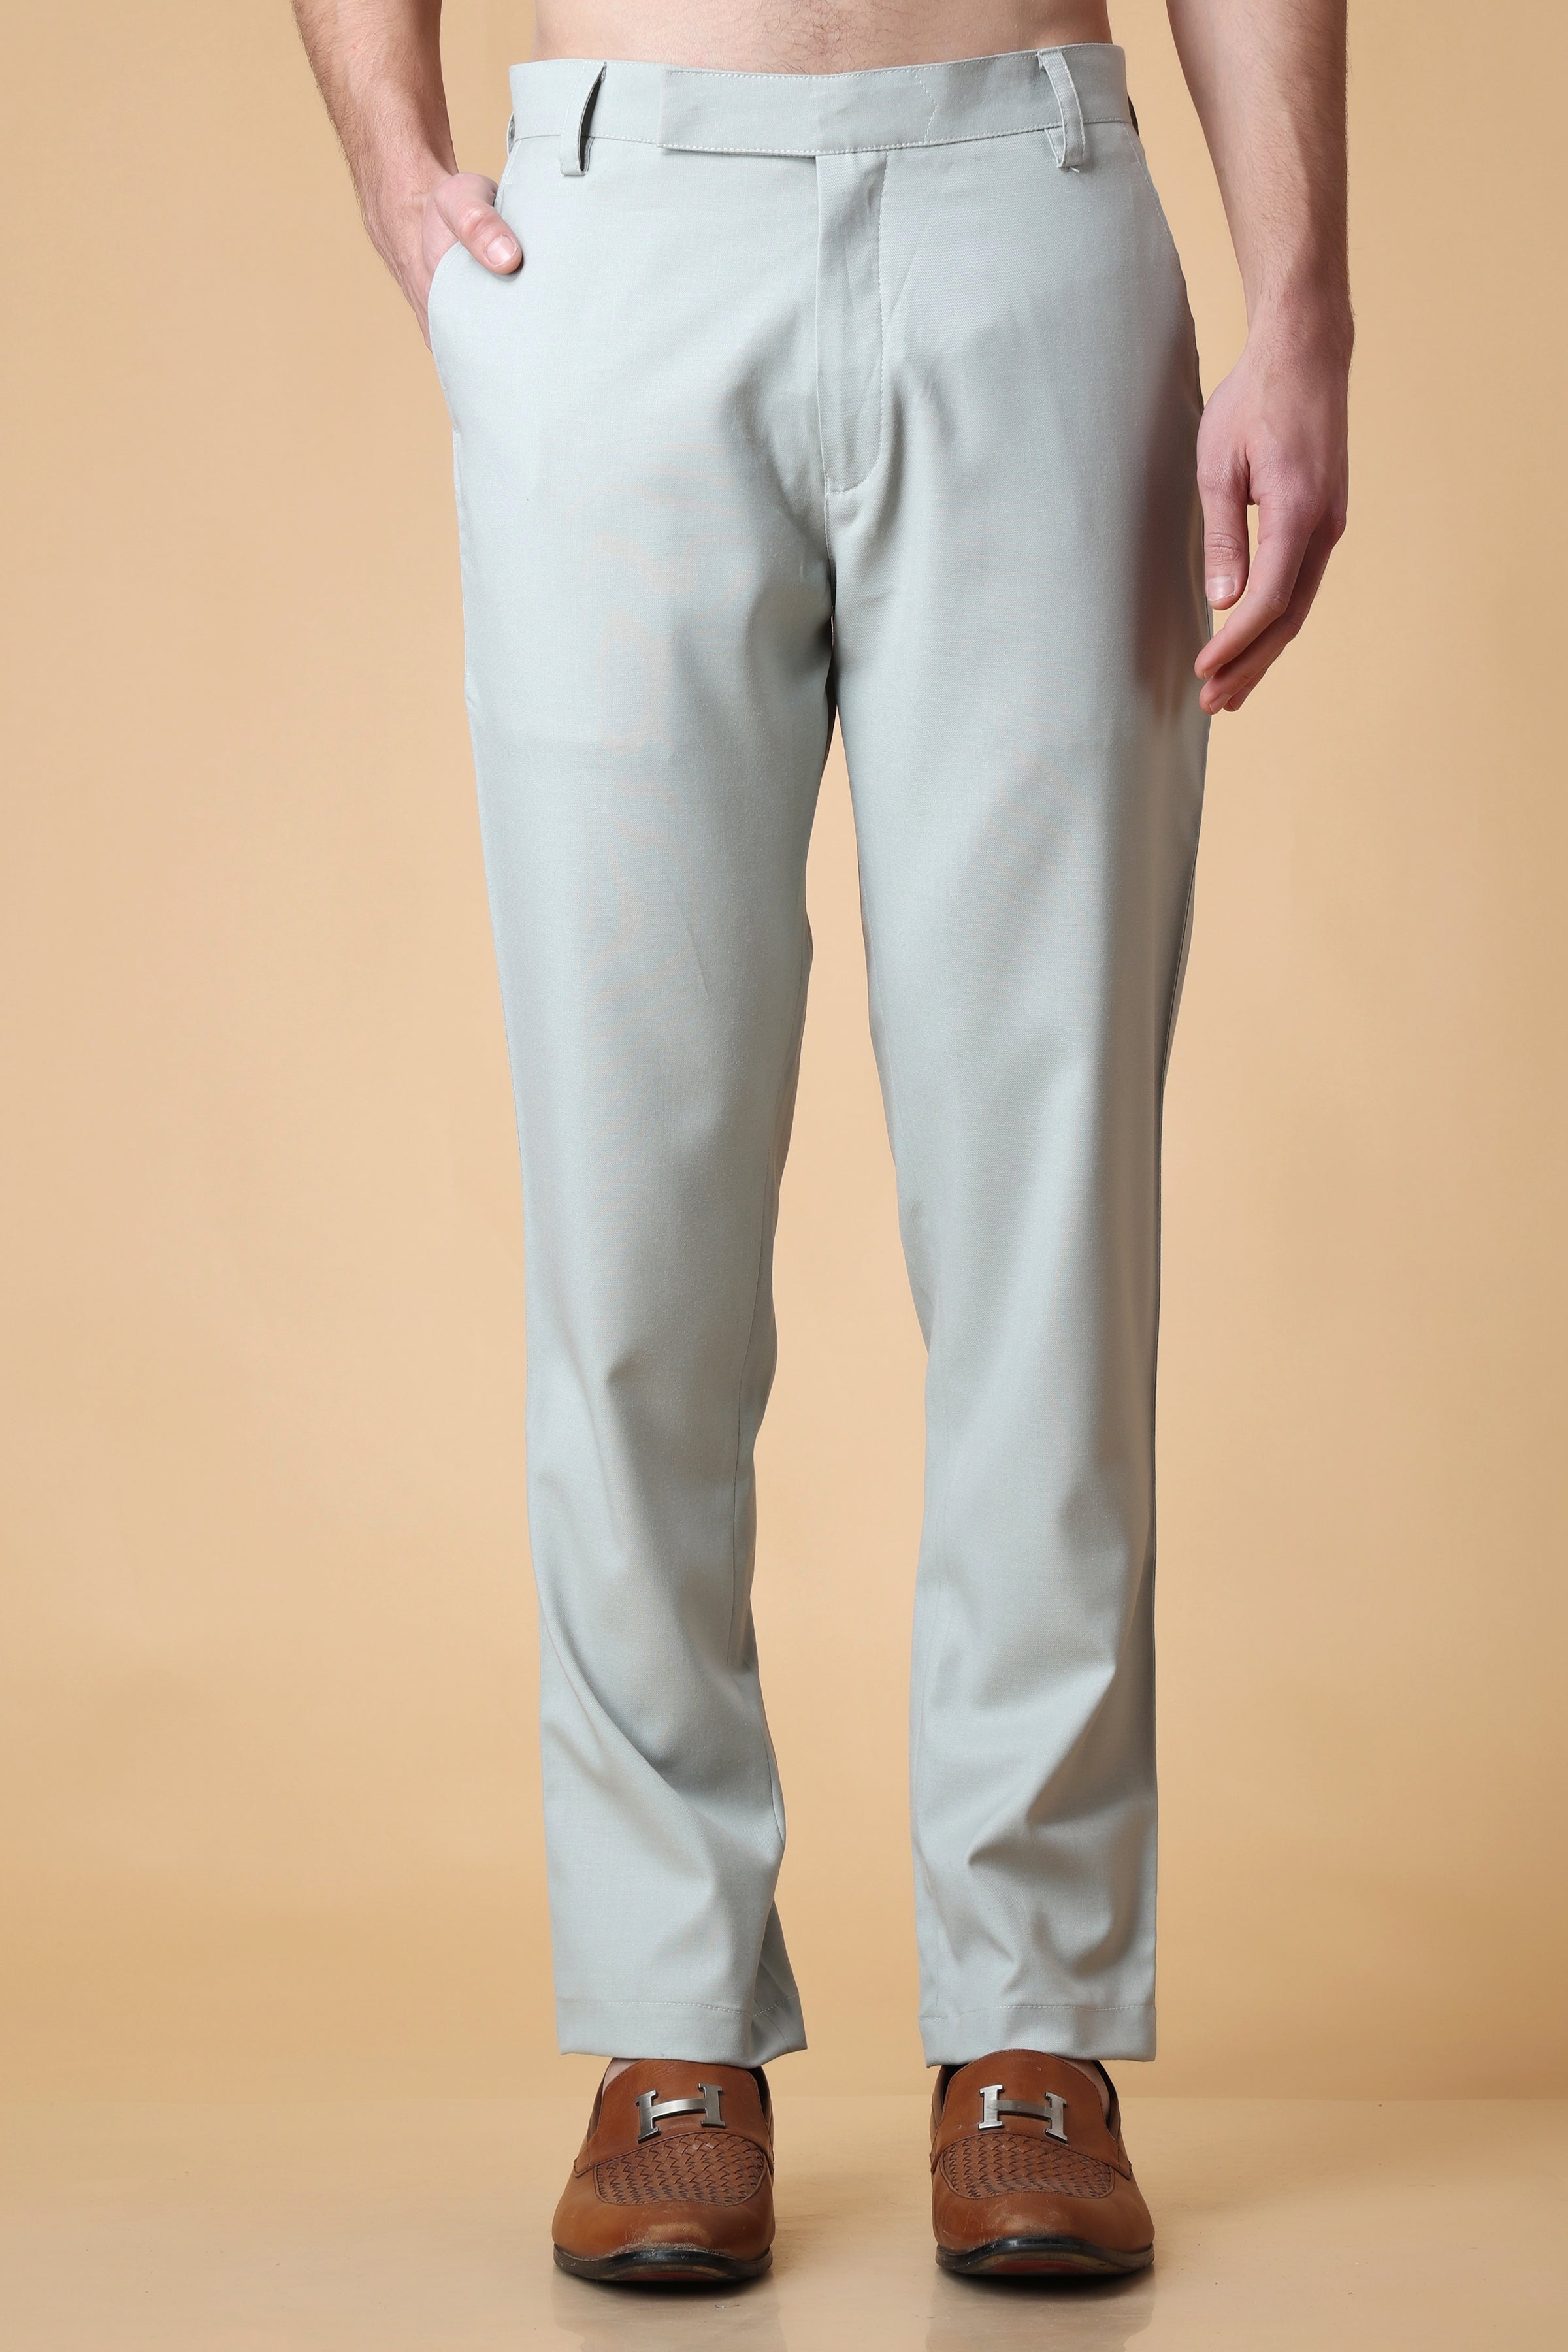 Buy Women Grey Textured Formal Trousers Online  195851  Allen Solly